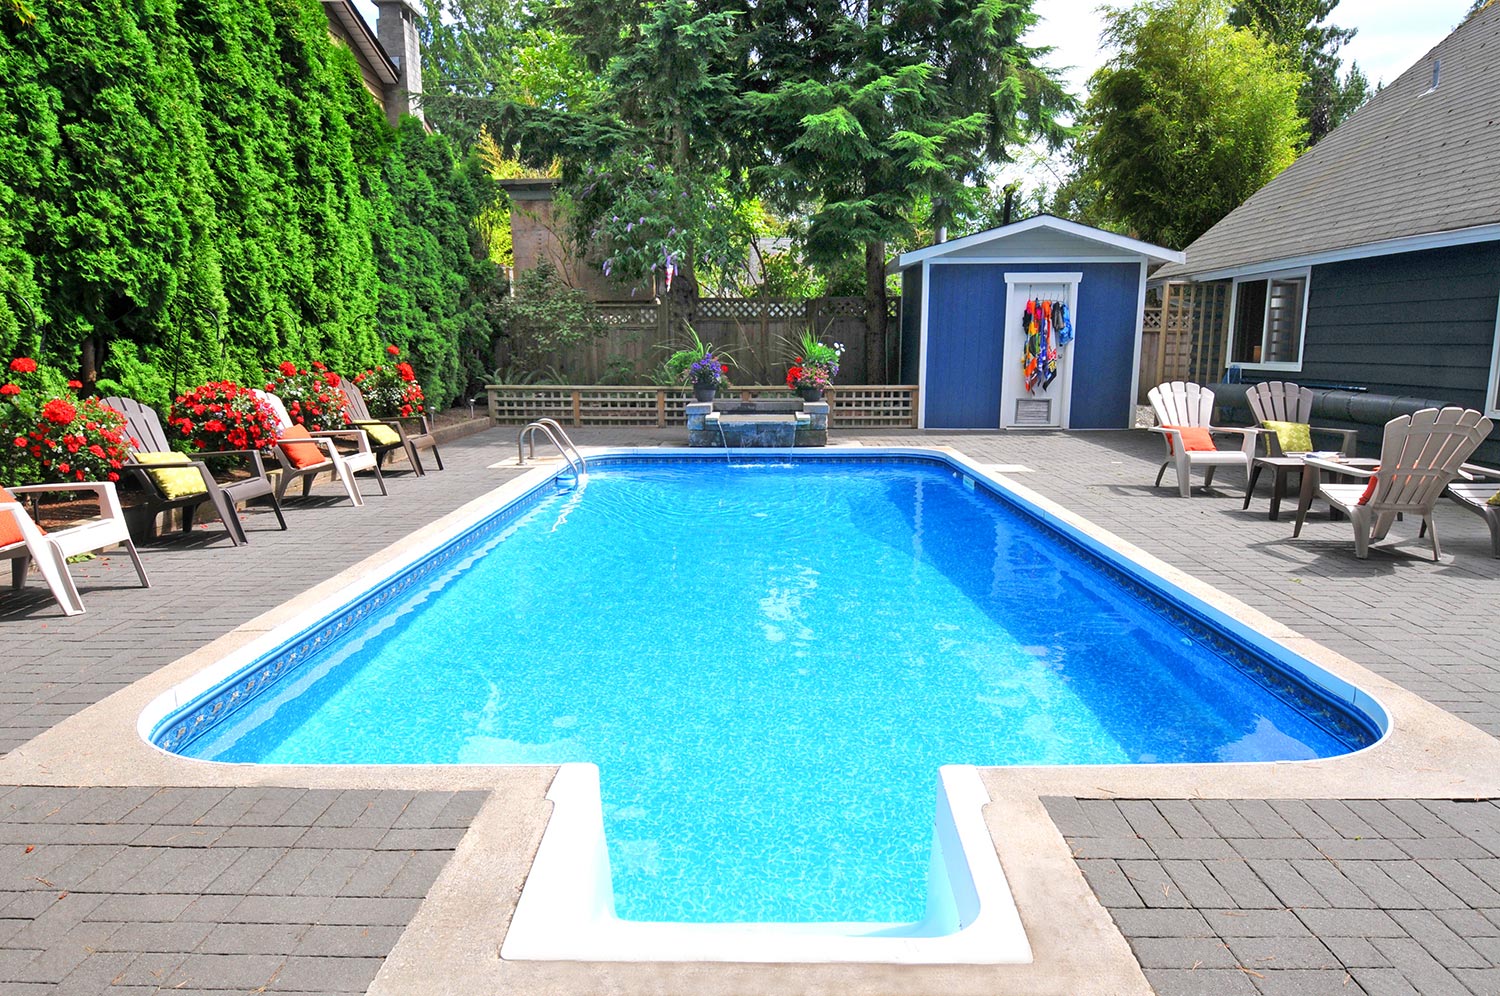 Beautiful back yard swimming pool